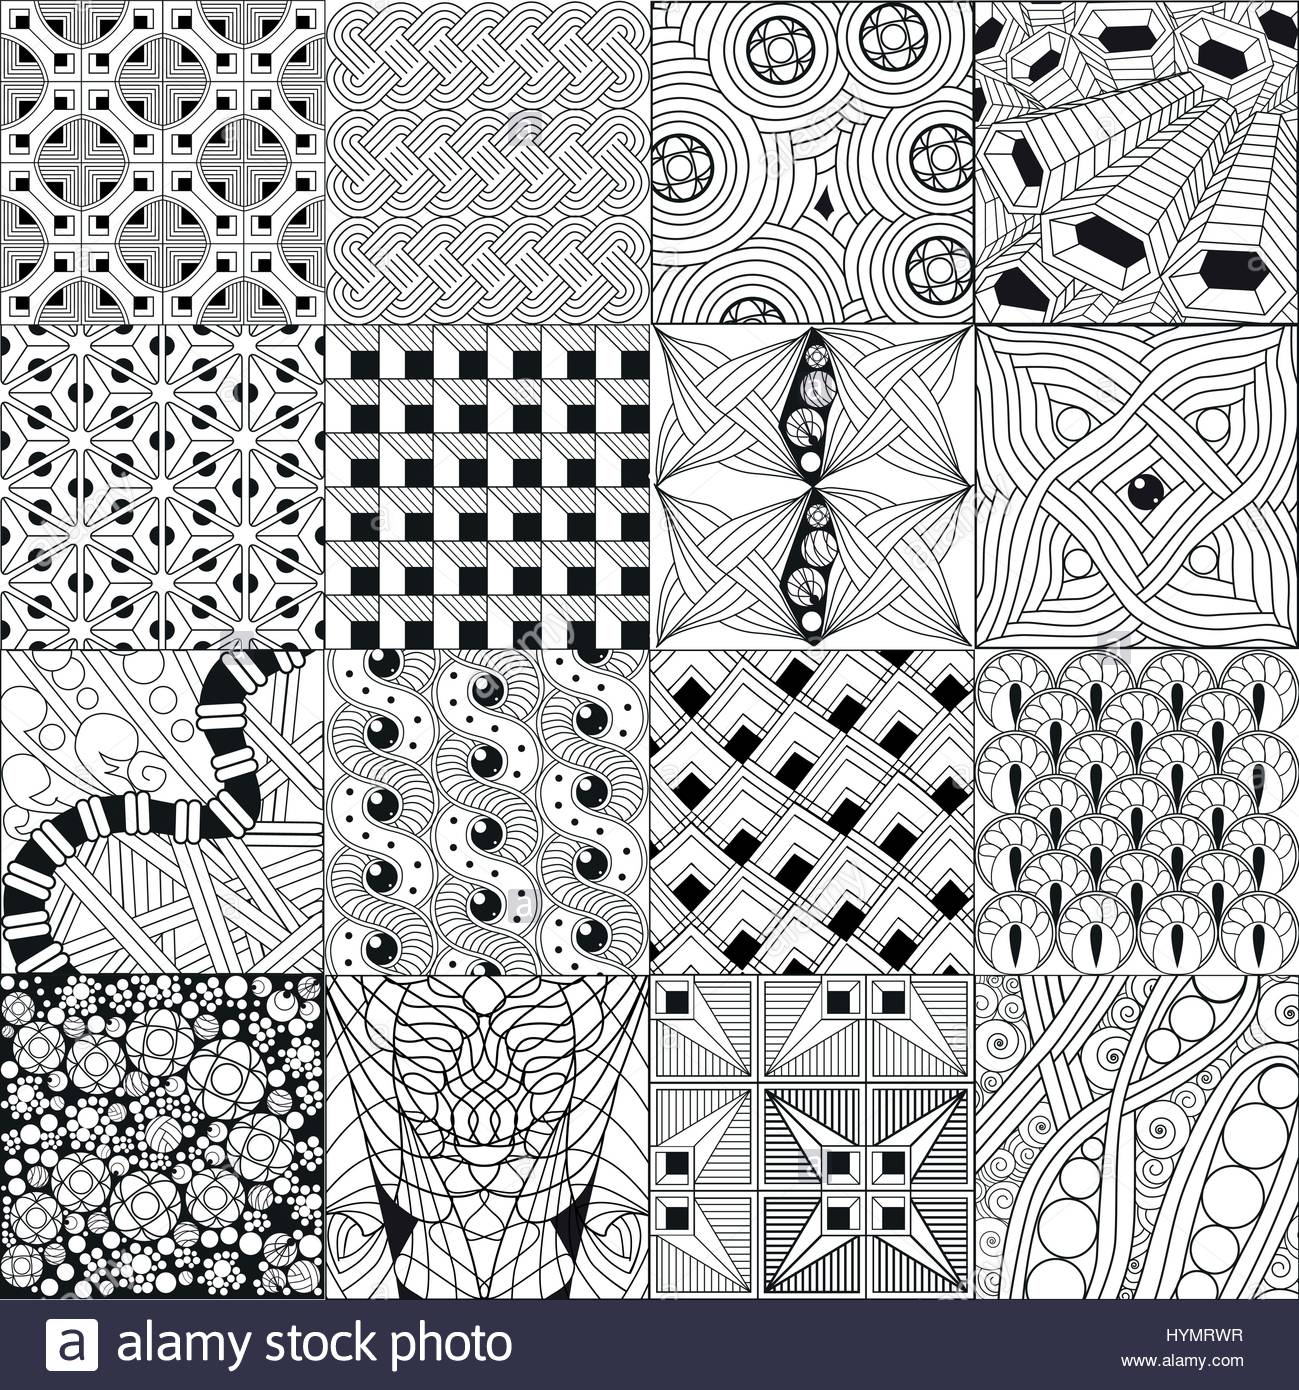 🔥 [20+] Zentangle Backgrounds | WallpaperSafari